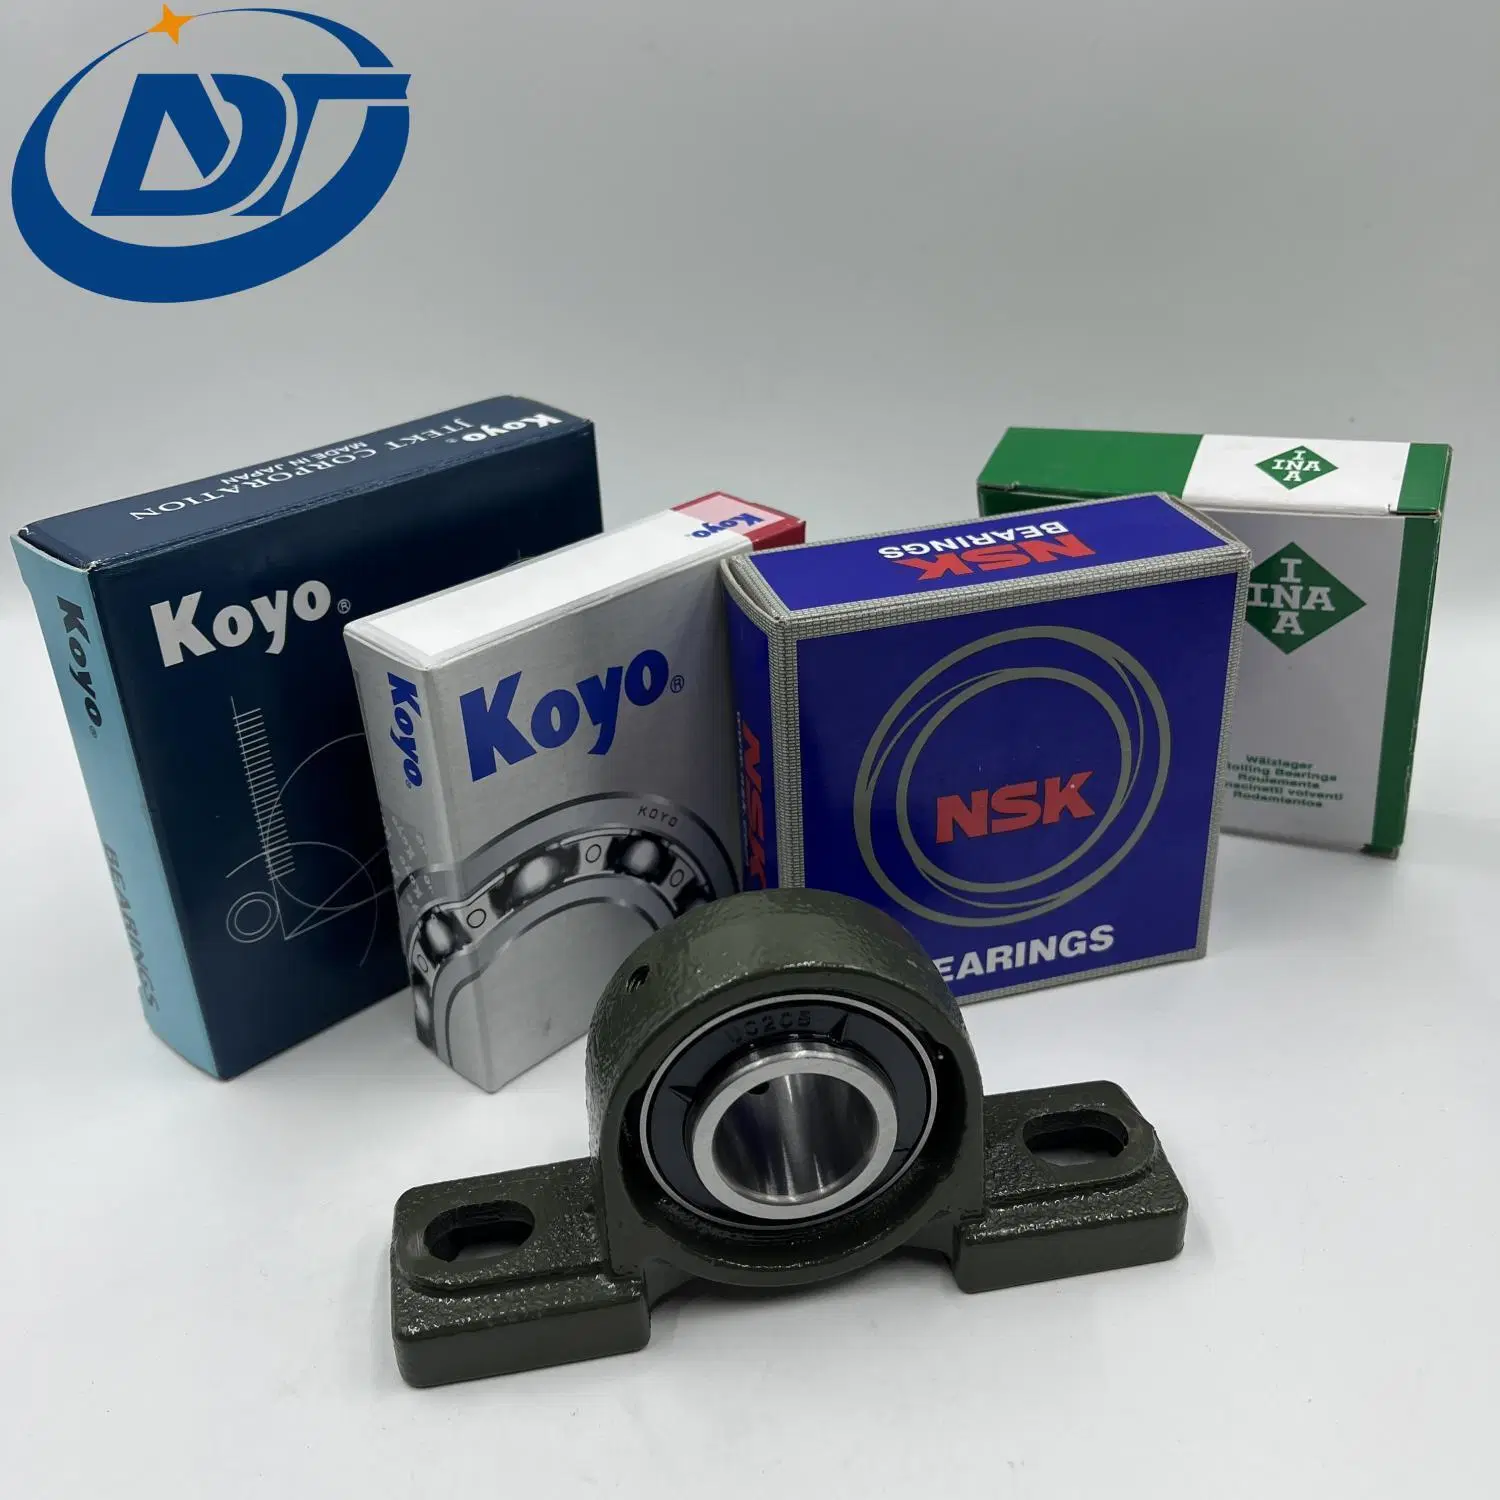 Inserte la unidad de UC/PCD/Sb313 Koyo/rodamiento de chumacera de NSK para motor